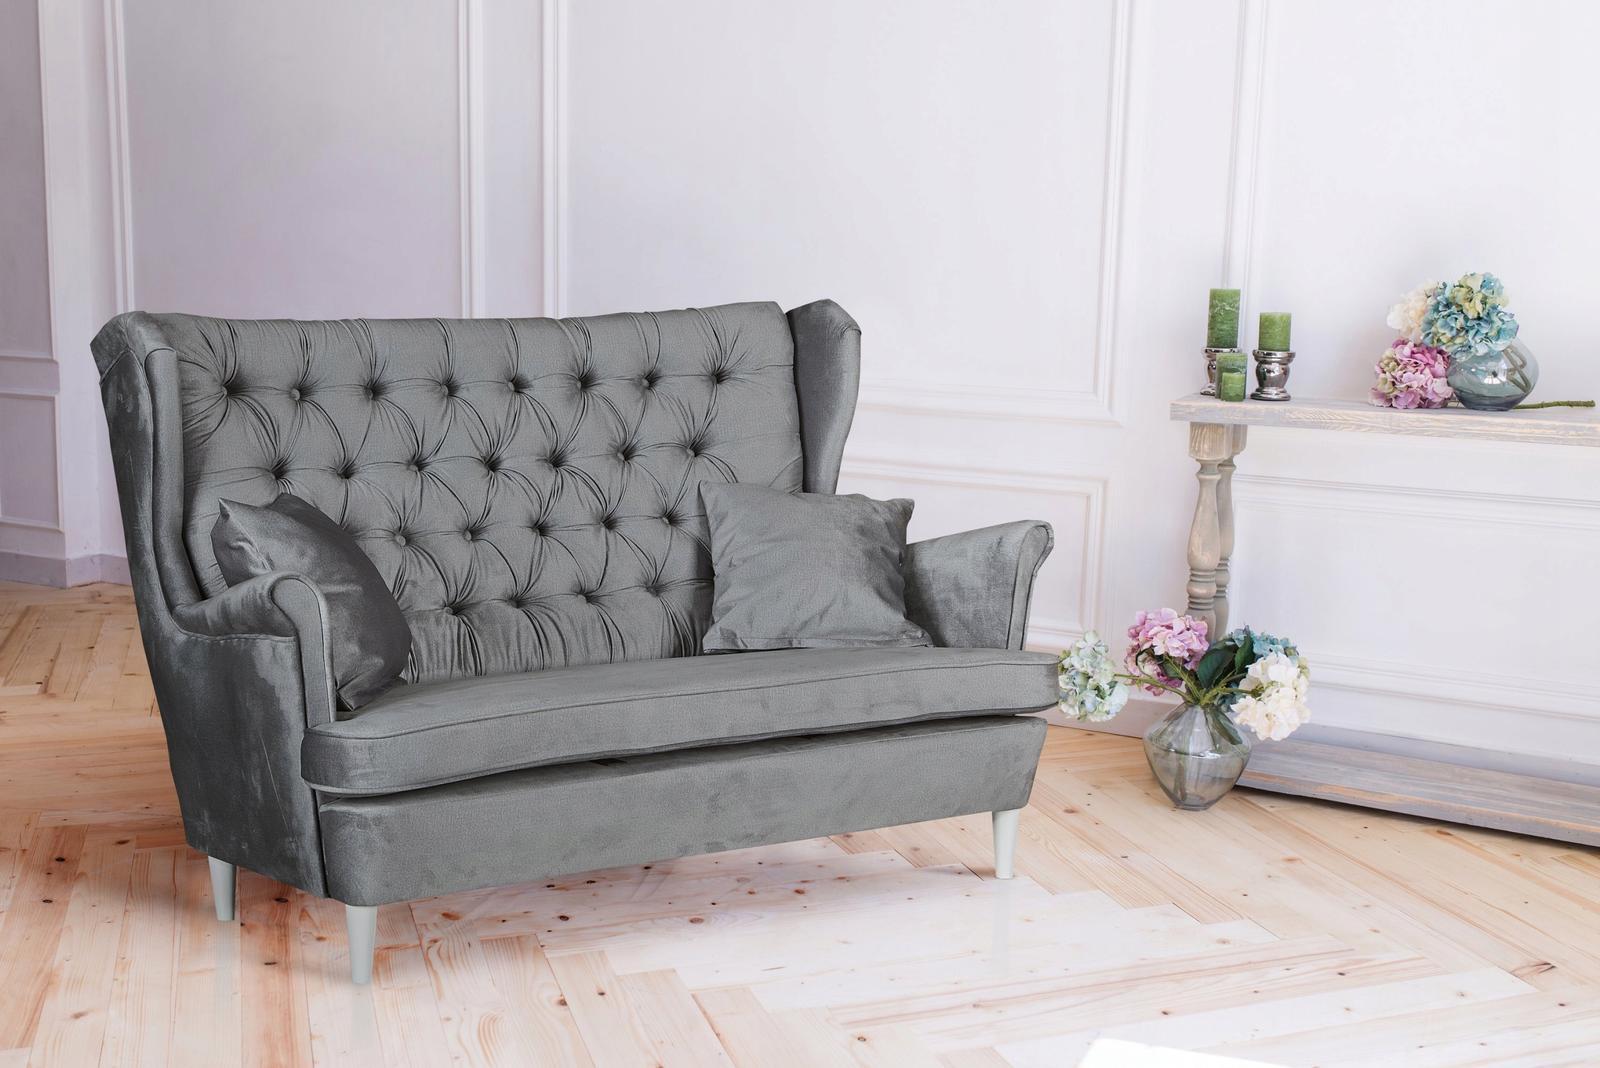 Zestaw wypoczynkowy sofa + 2 fotele Family Meble nr. 5